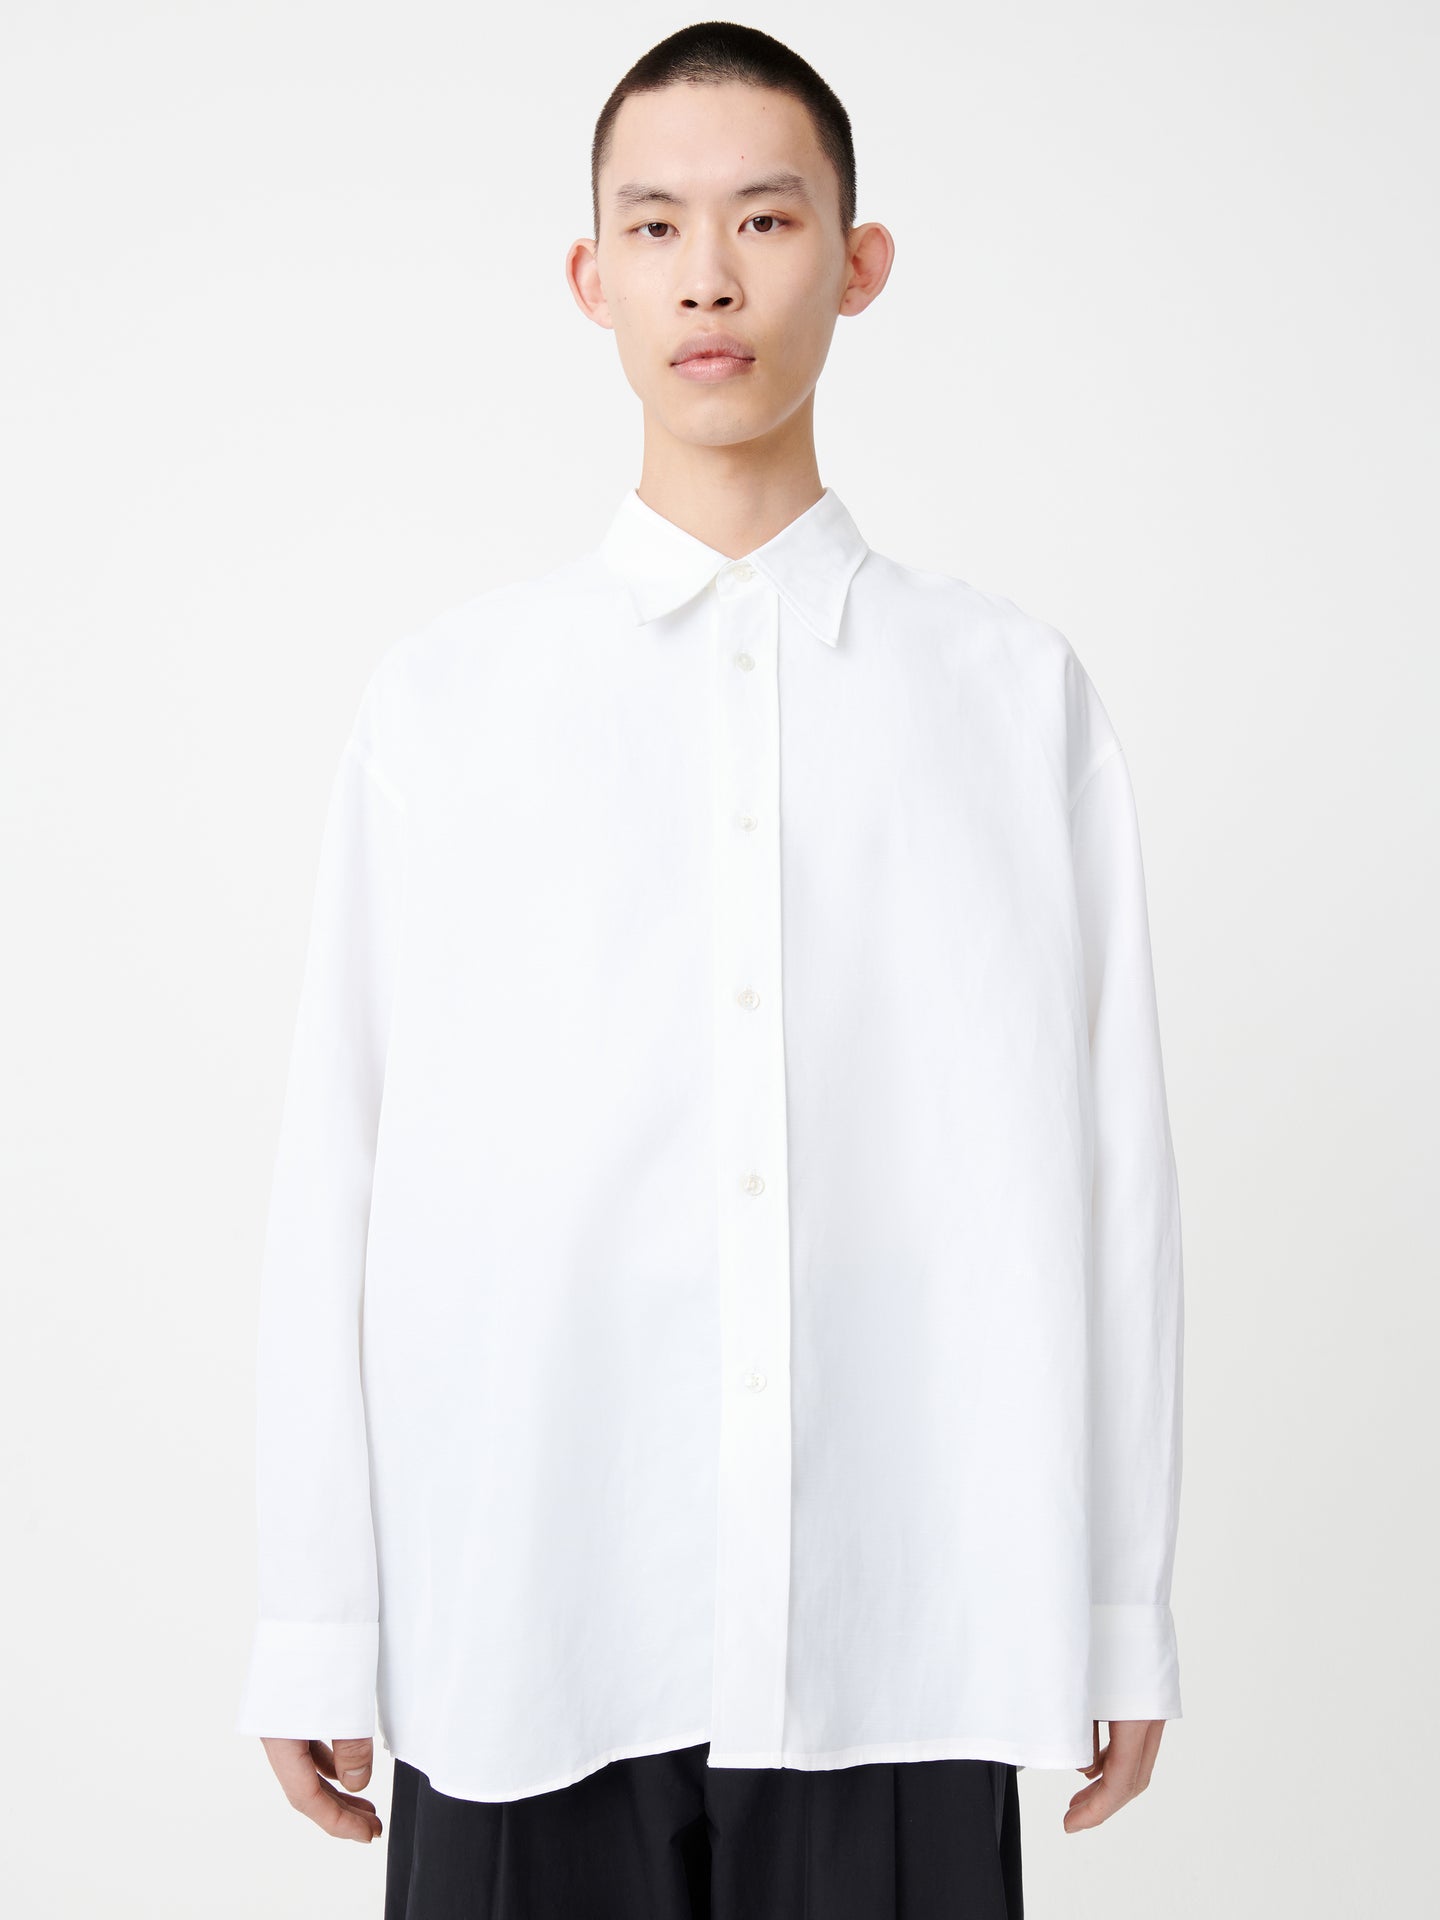 Loche Shirt in Optic White